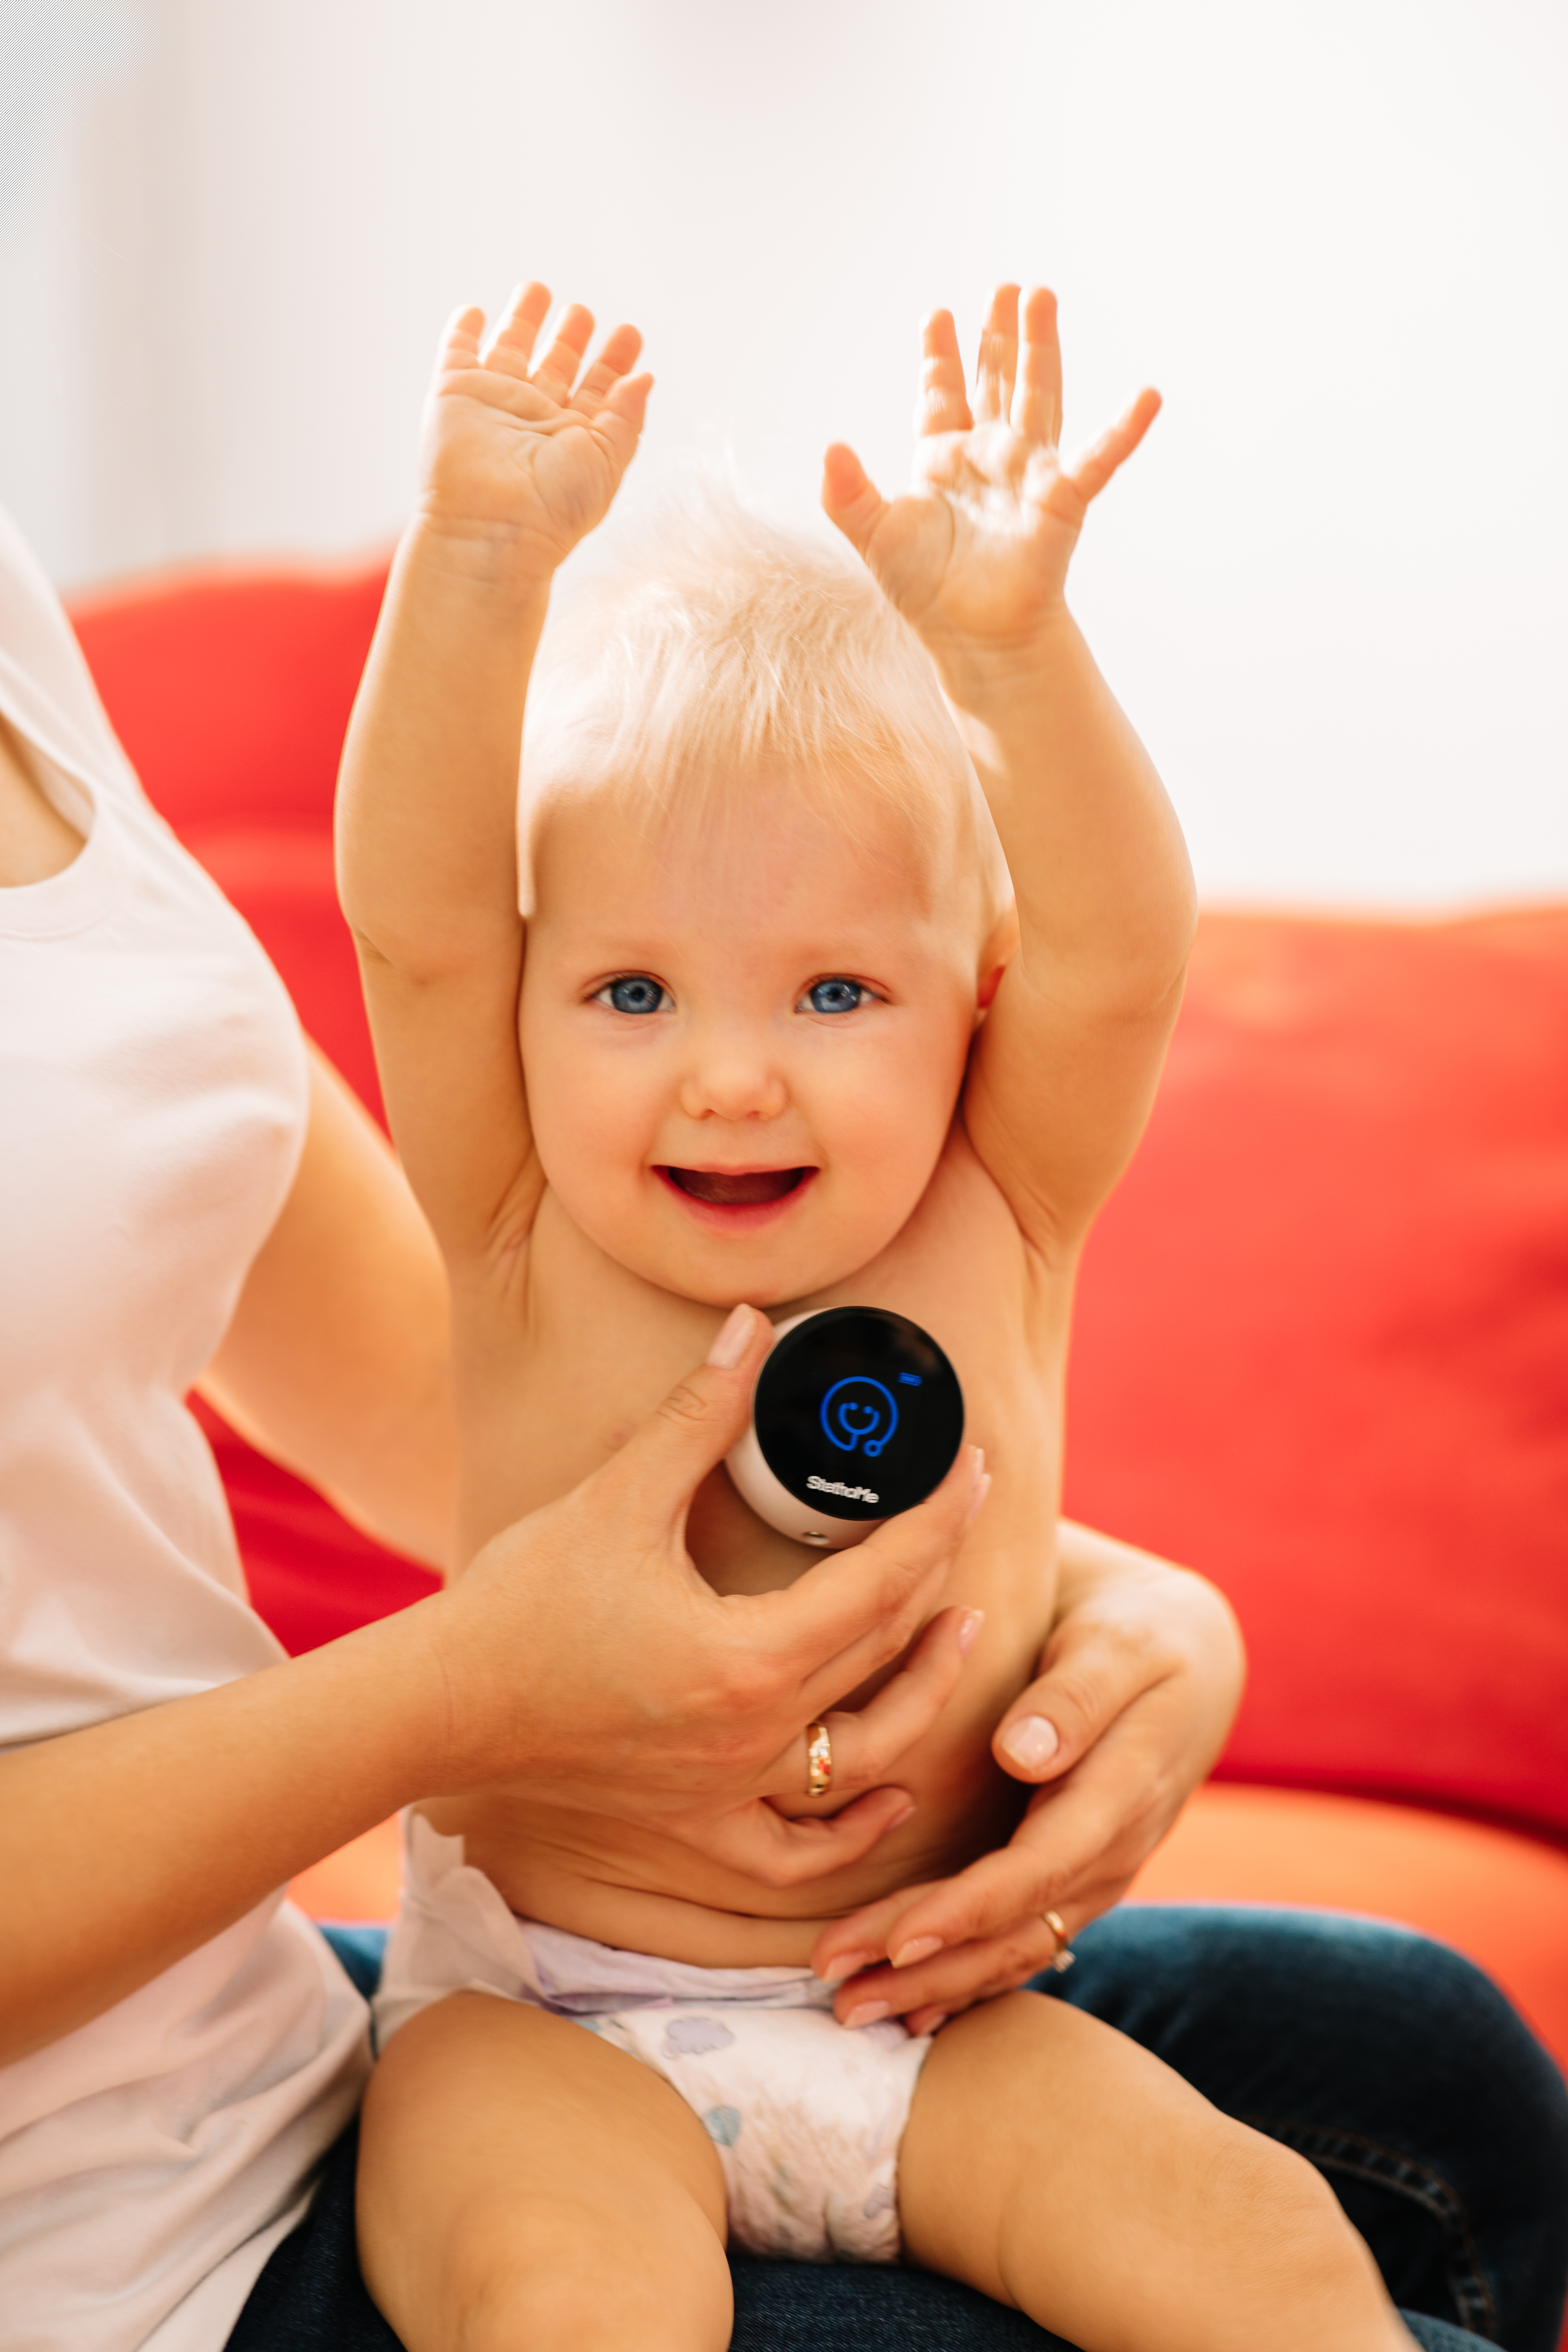 StethoMe w użyciu - urządzenie przyłożone do ciała uśmiechniętego dziecka